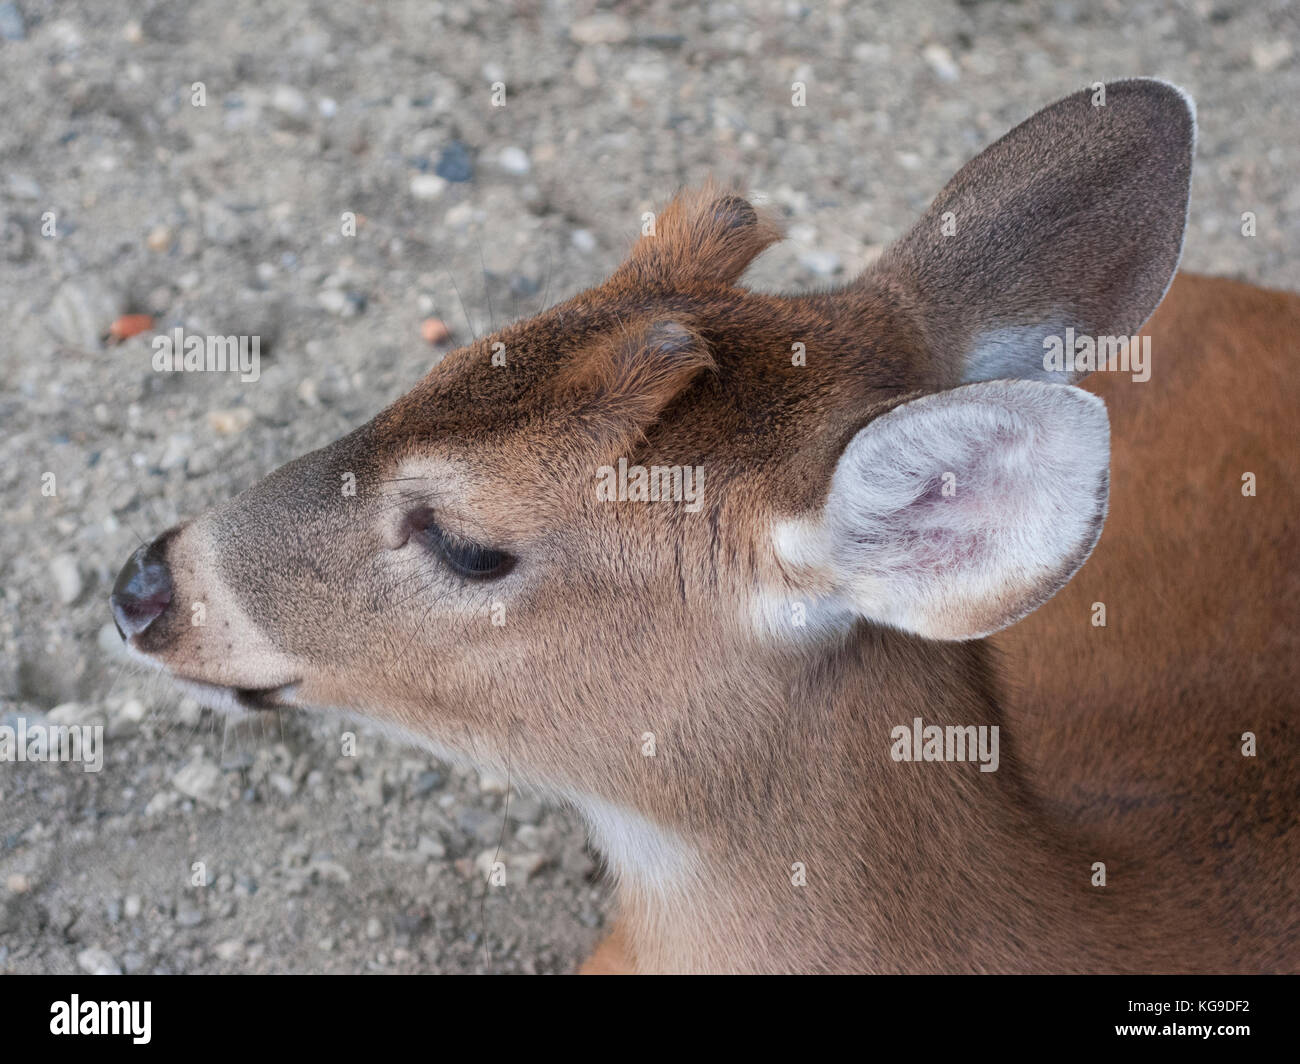 Baby Deer head  close up Venezuelan Deer Stock Photo